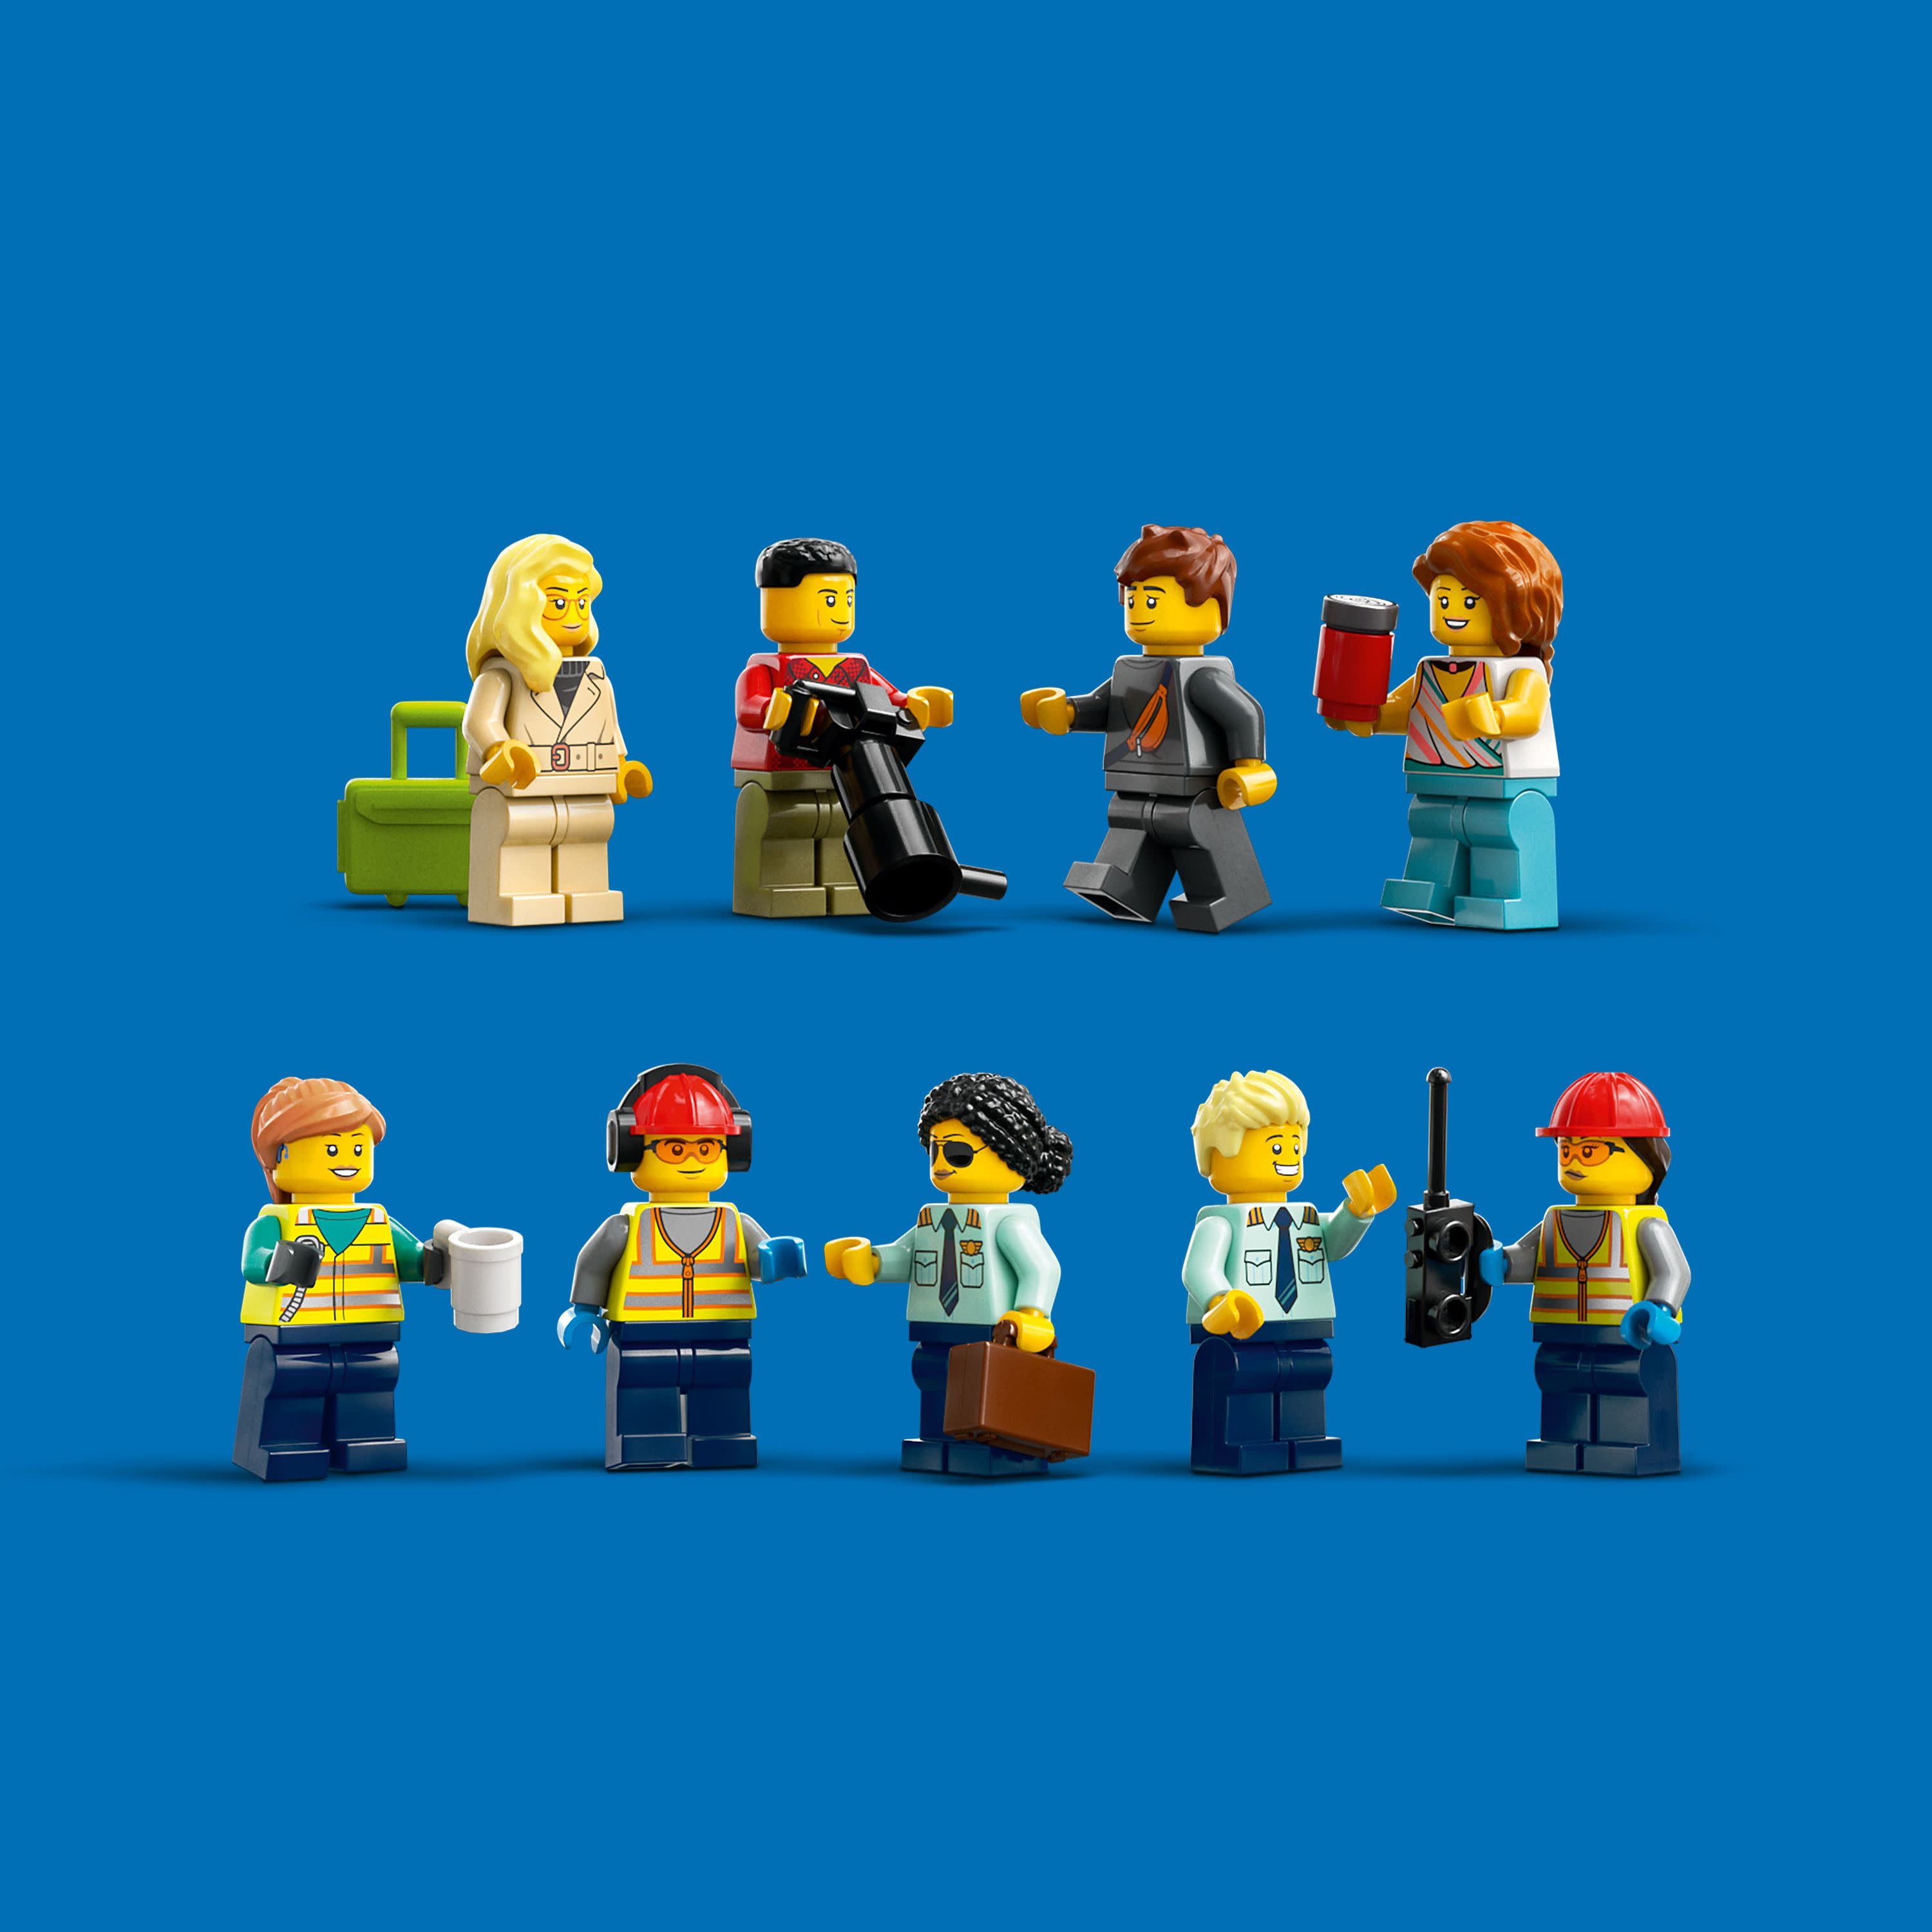 LEGO 60367 Aereo passeggeri - 60367